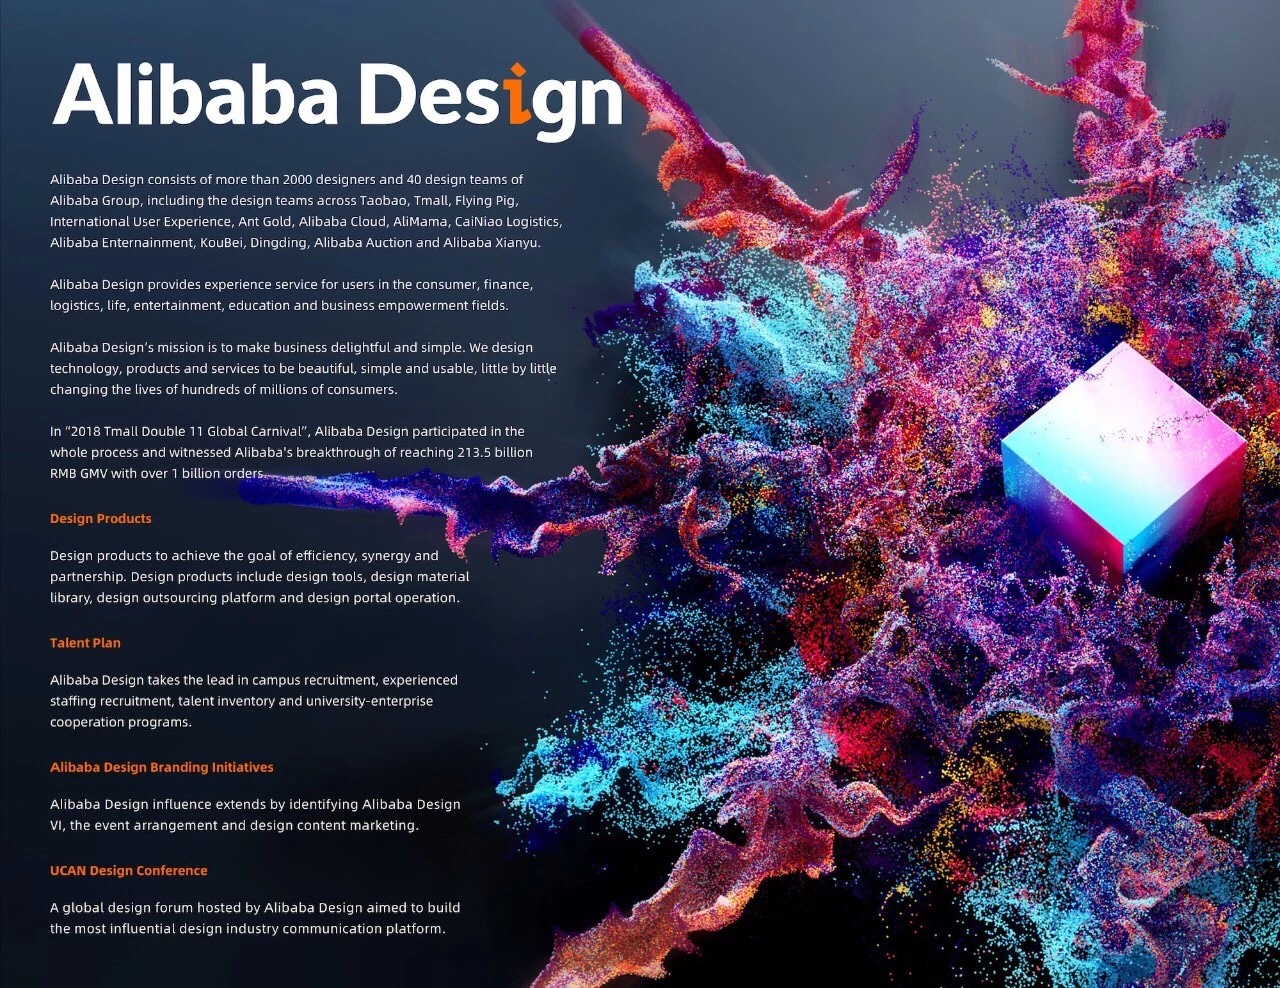 旧金山设计周 | Alibaba Design：10年后的设计师应该做些什么？